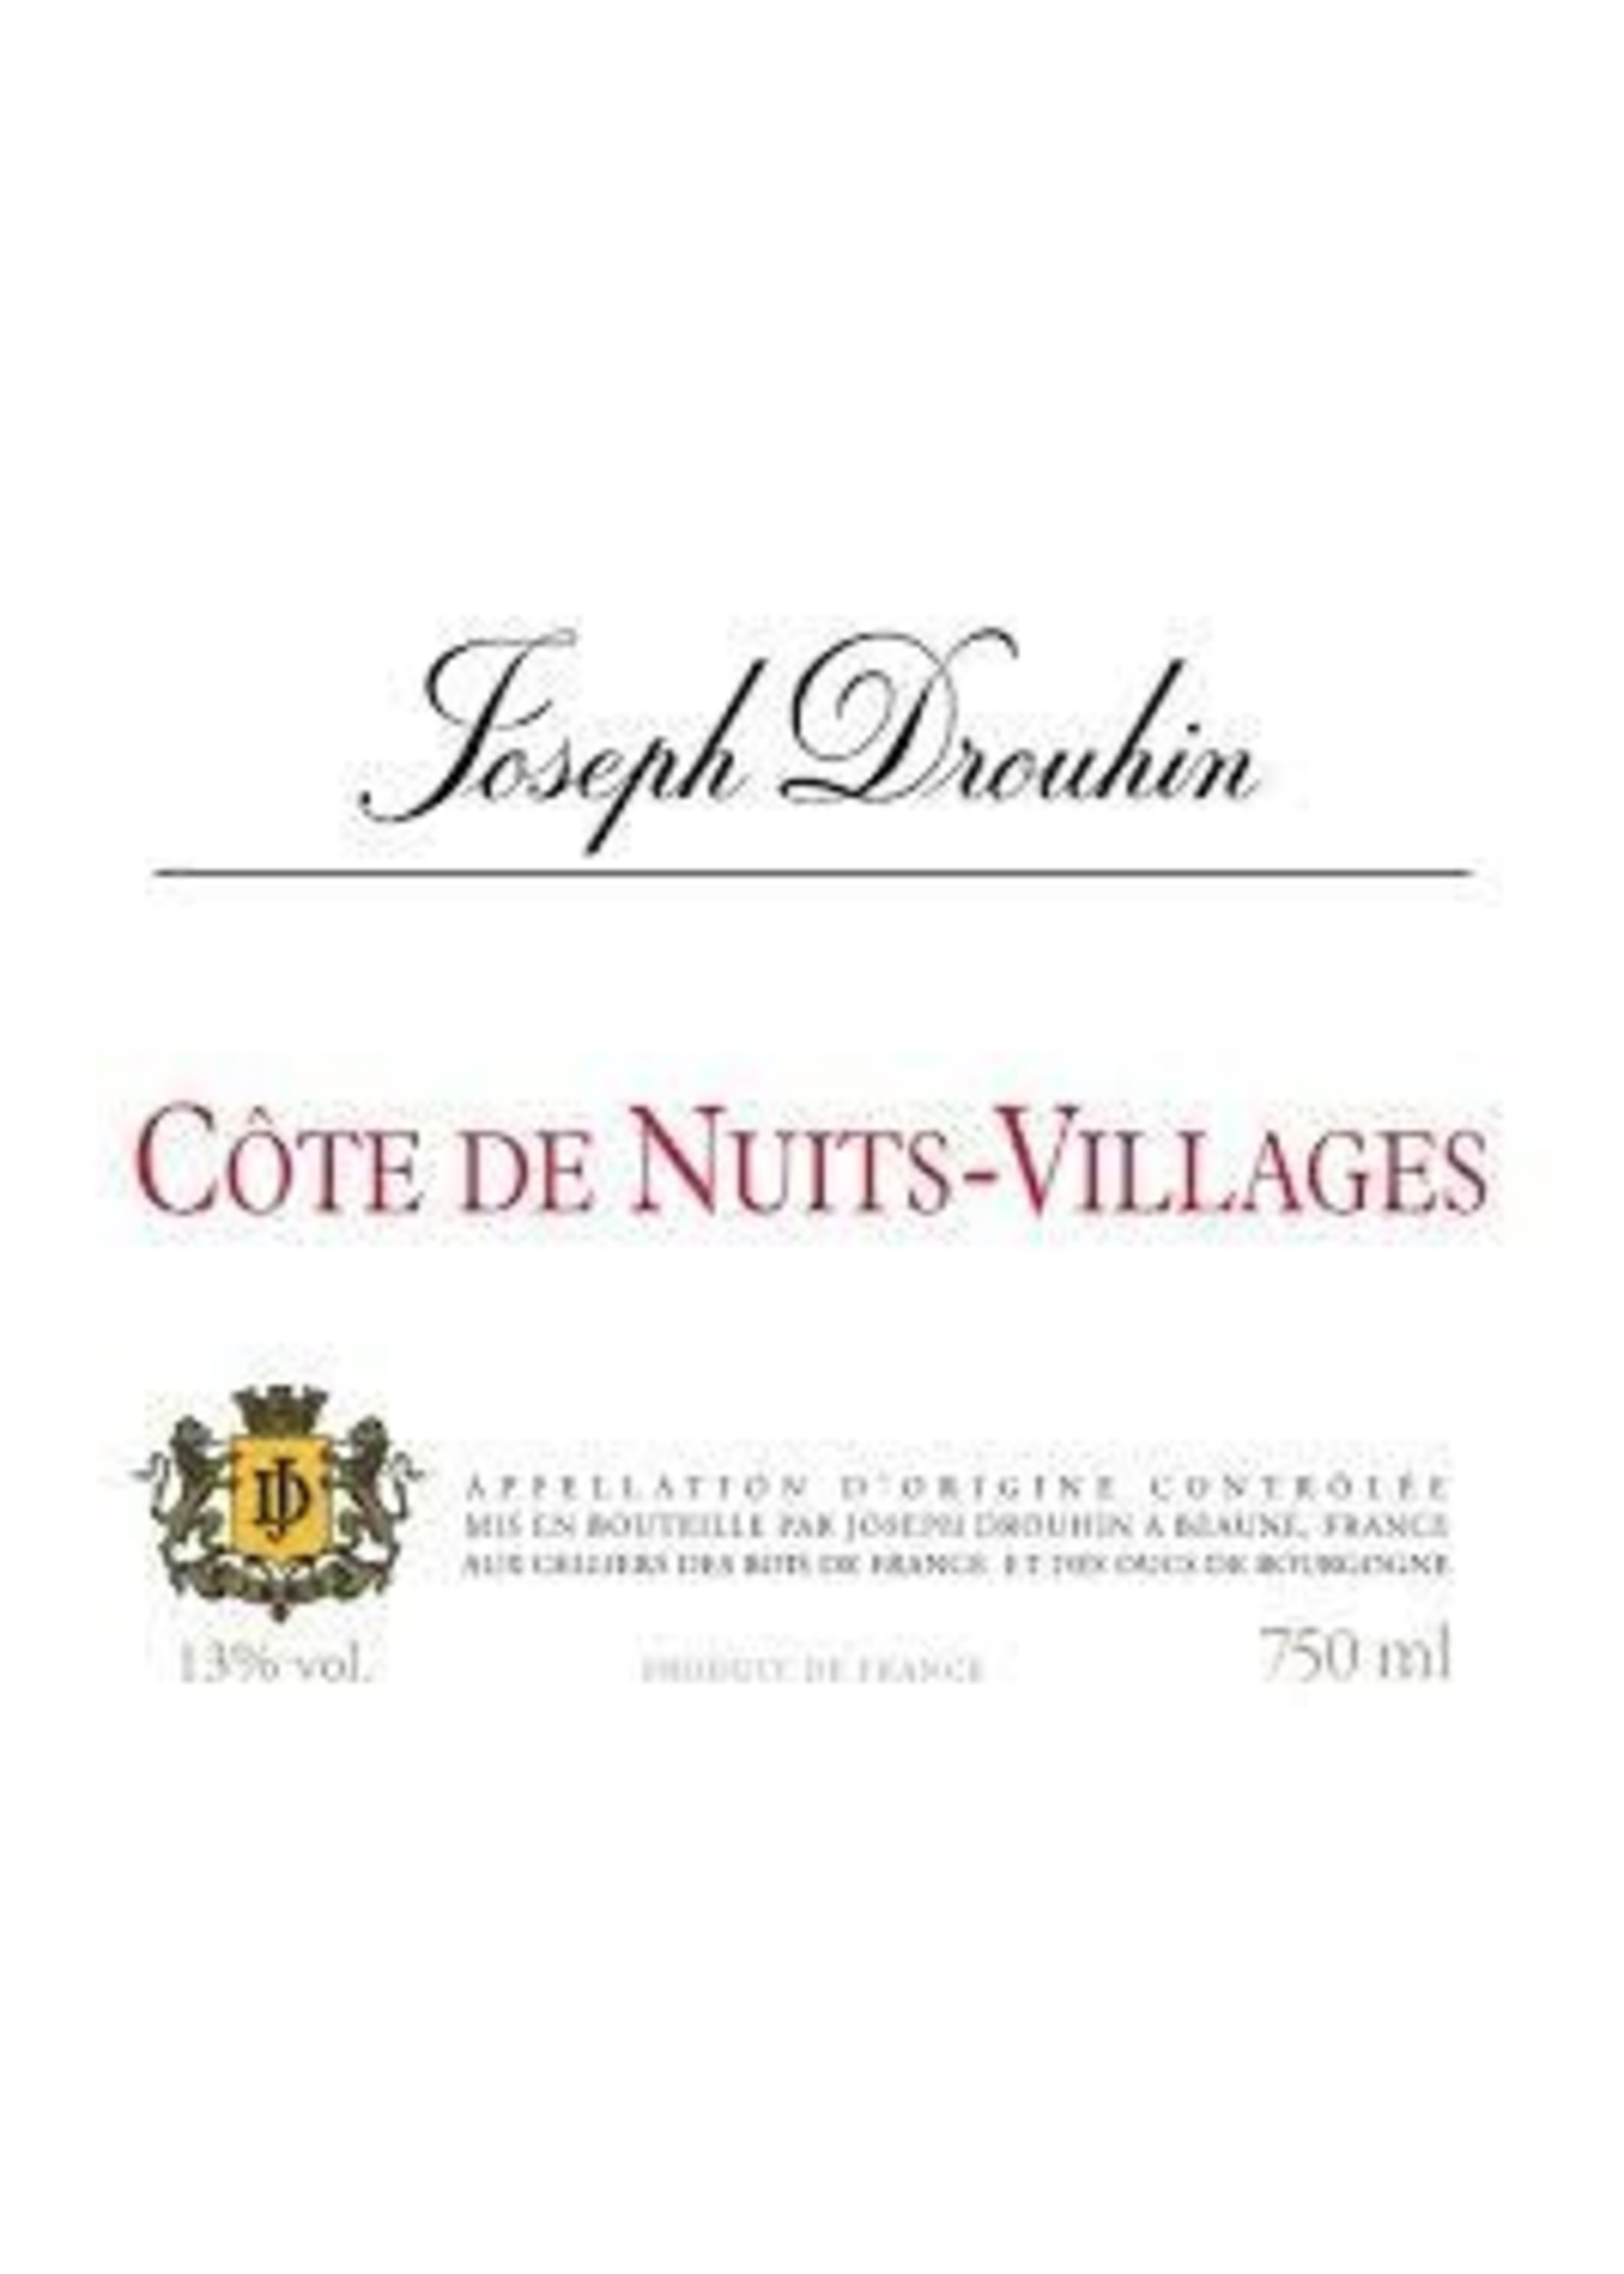 Joseph Drouhin 2020 Cote de Nuits Villages 750ml